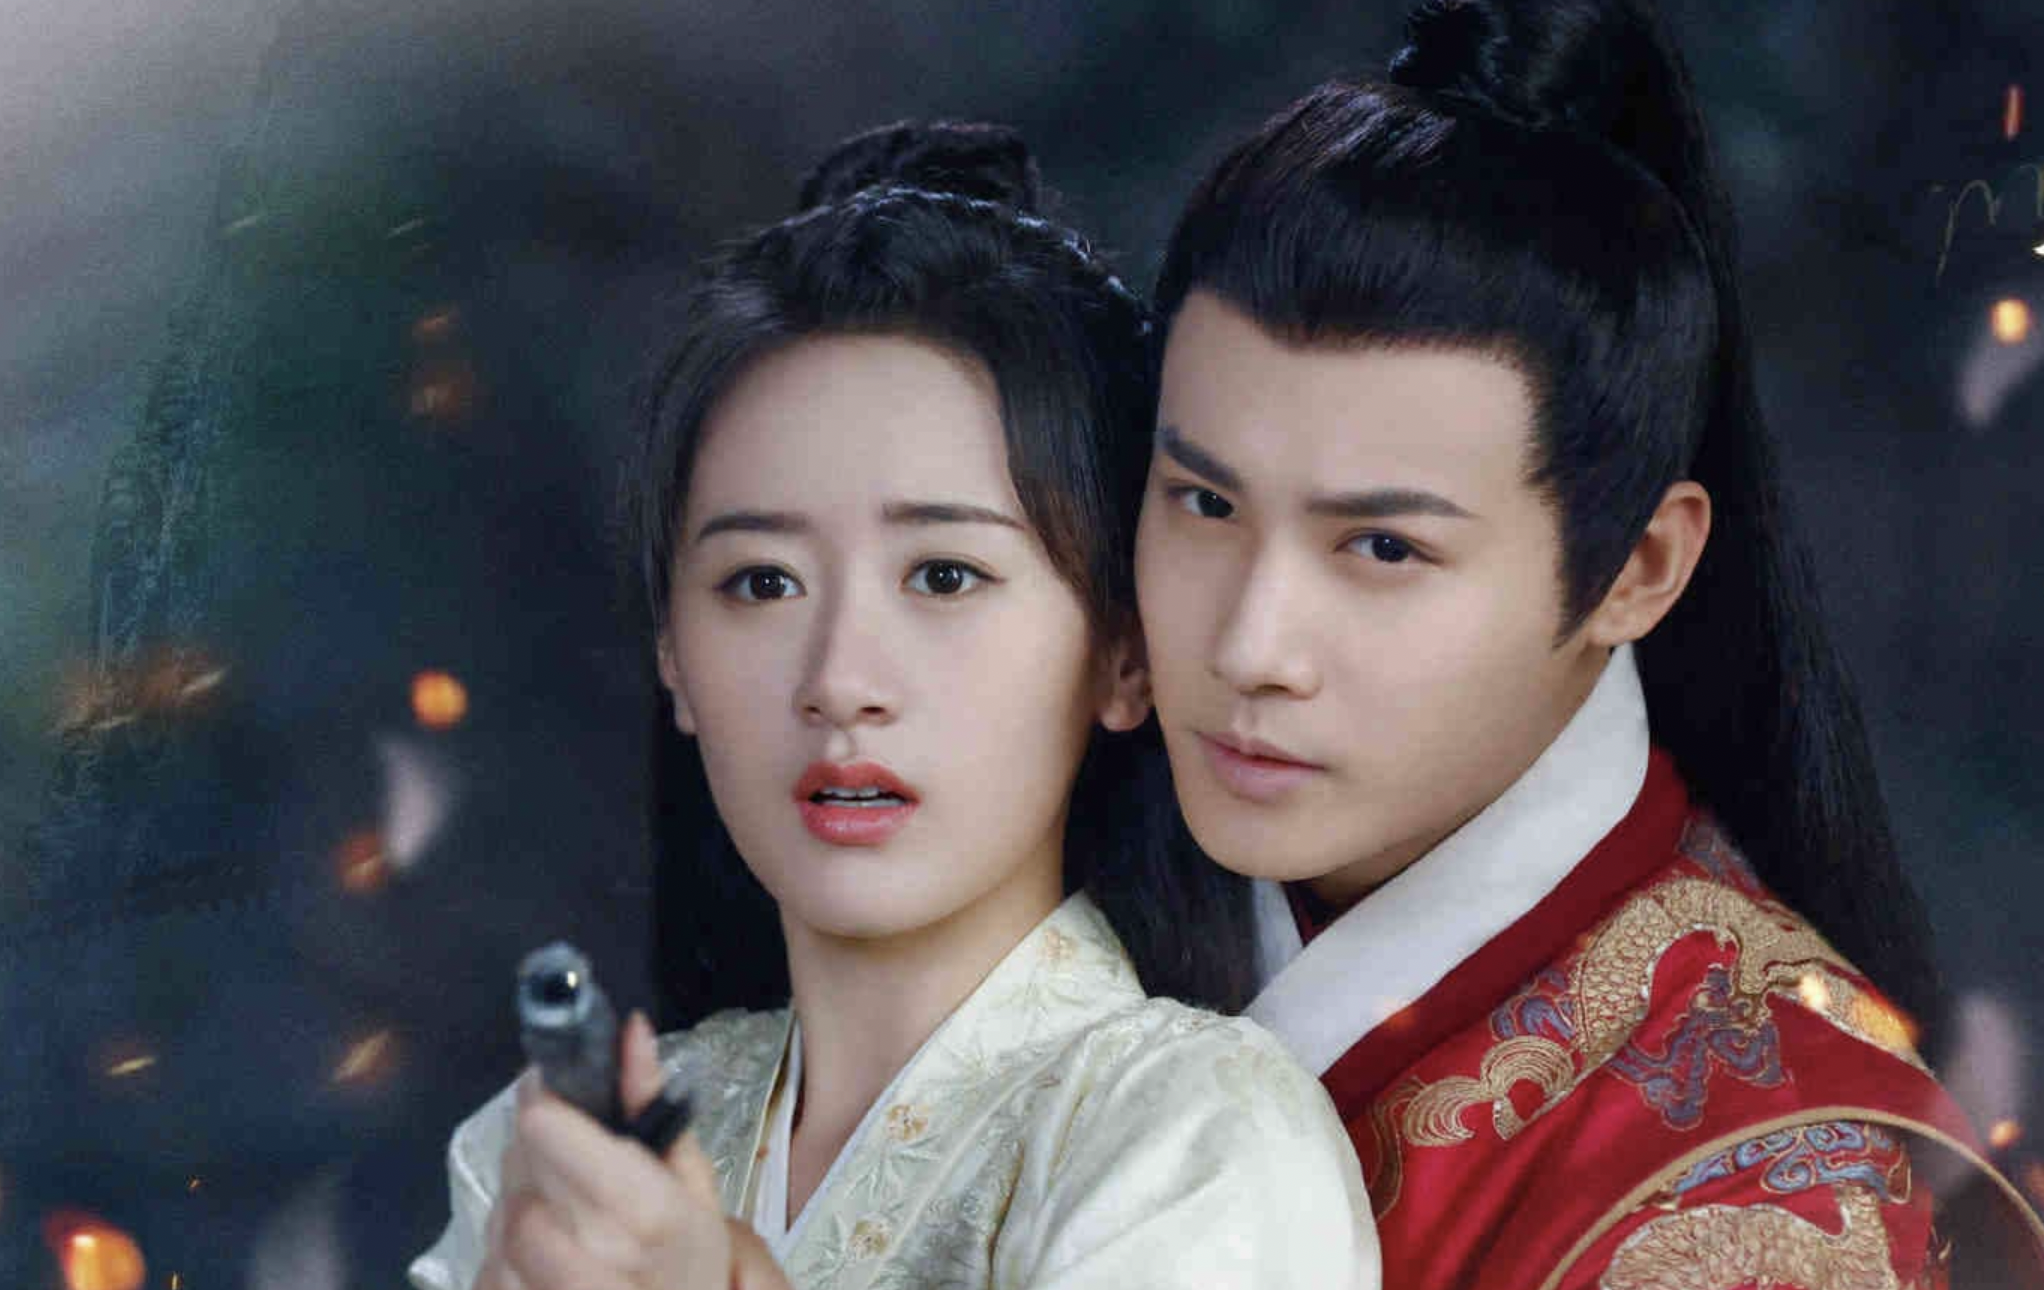 Phim cổ trang Trung Quốc 'Chúc khanh hảo' bị chê dở - ảnh 1